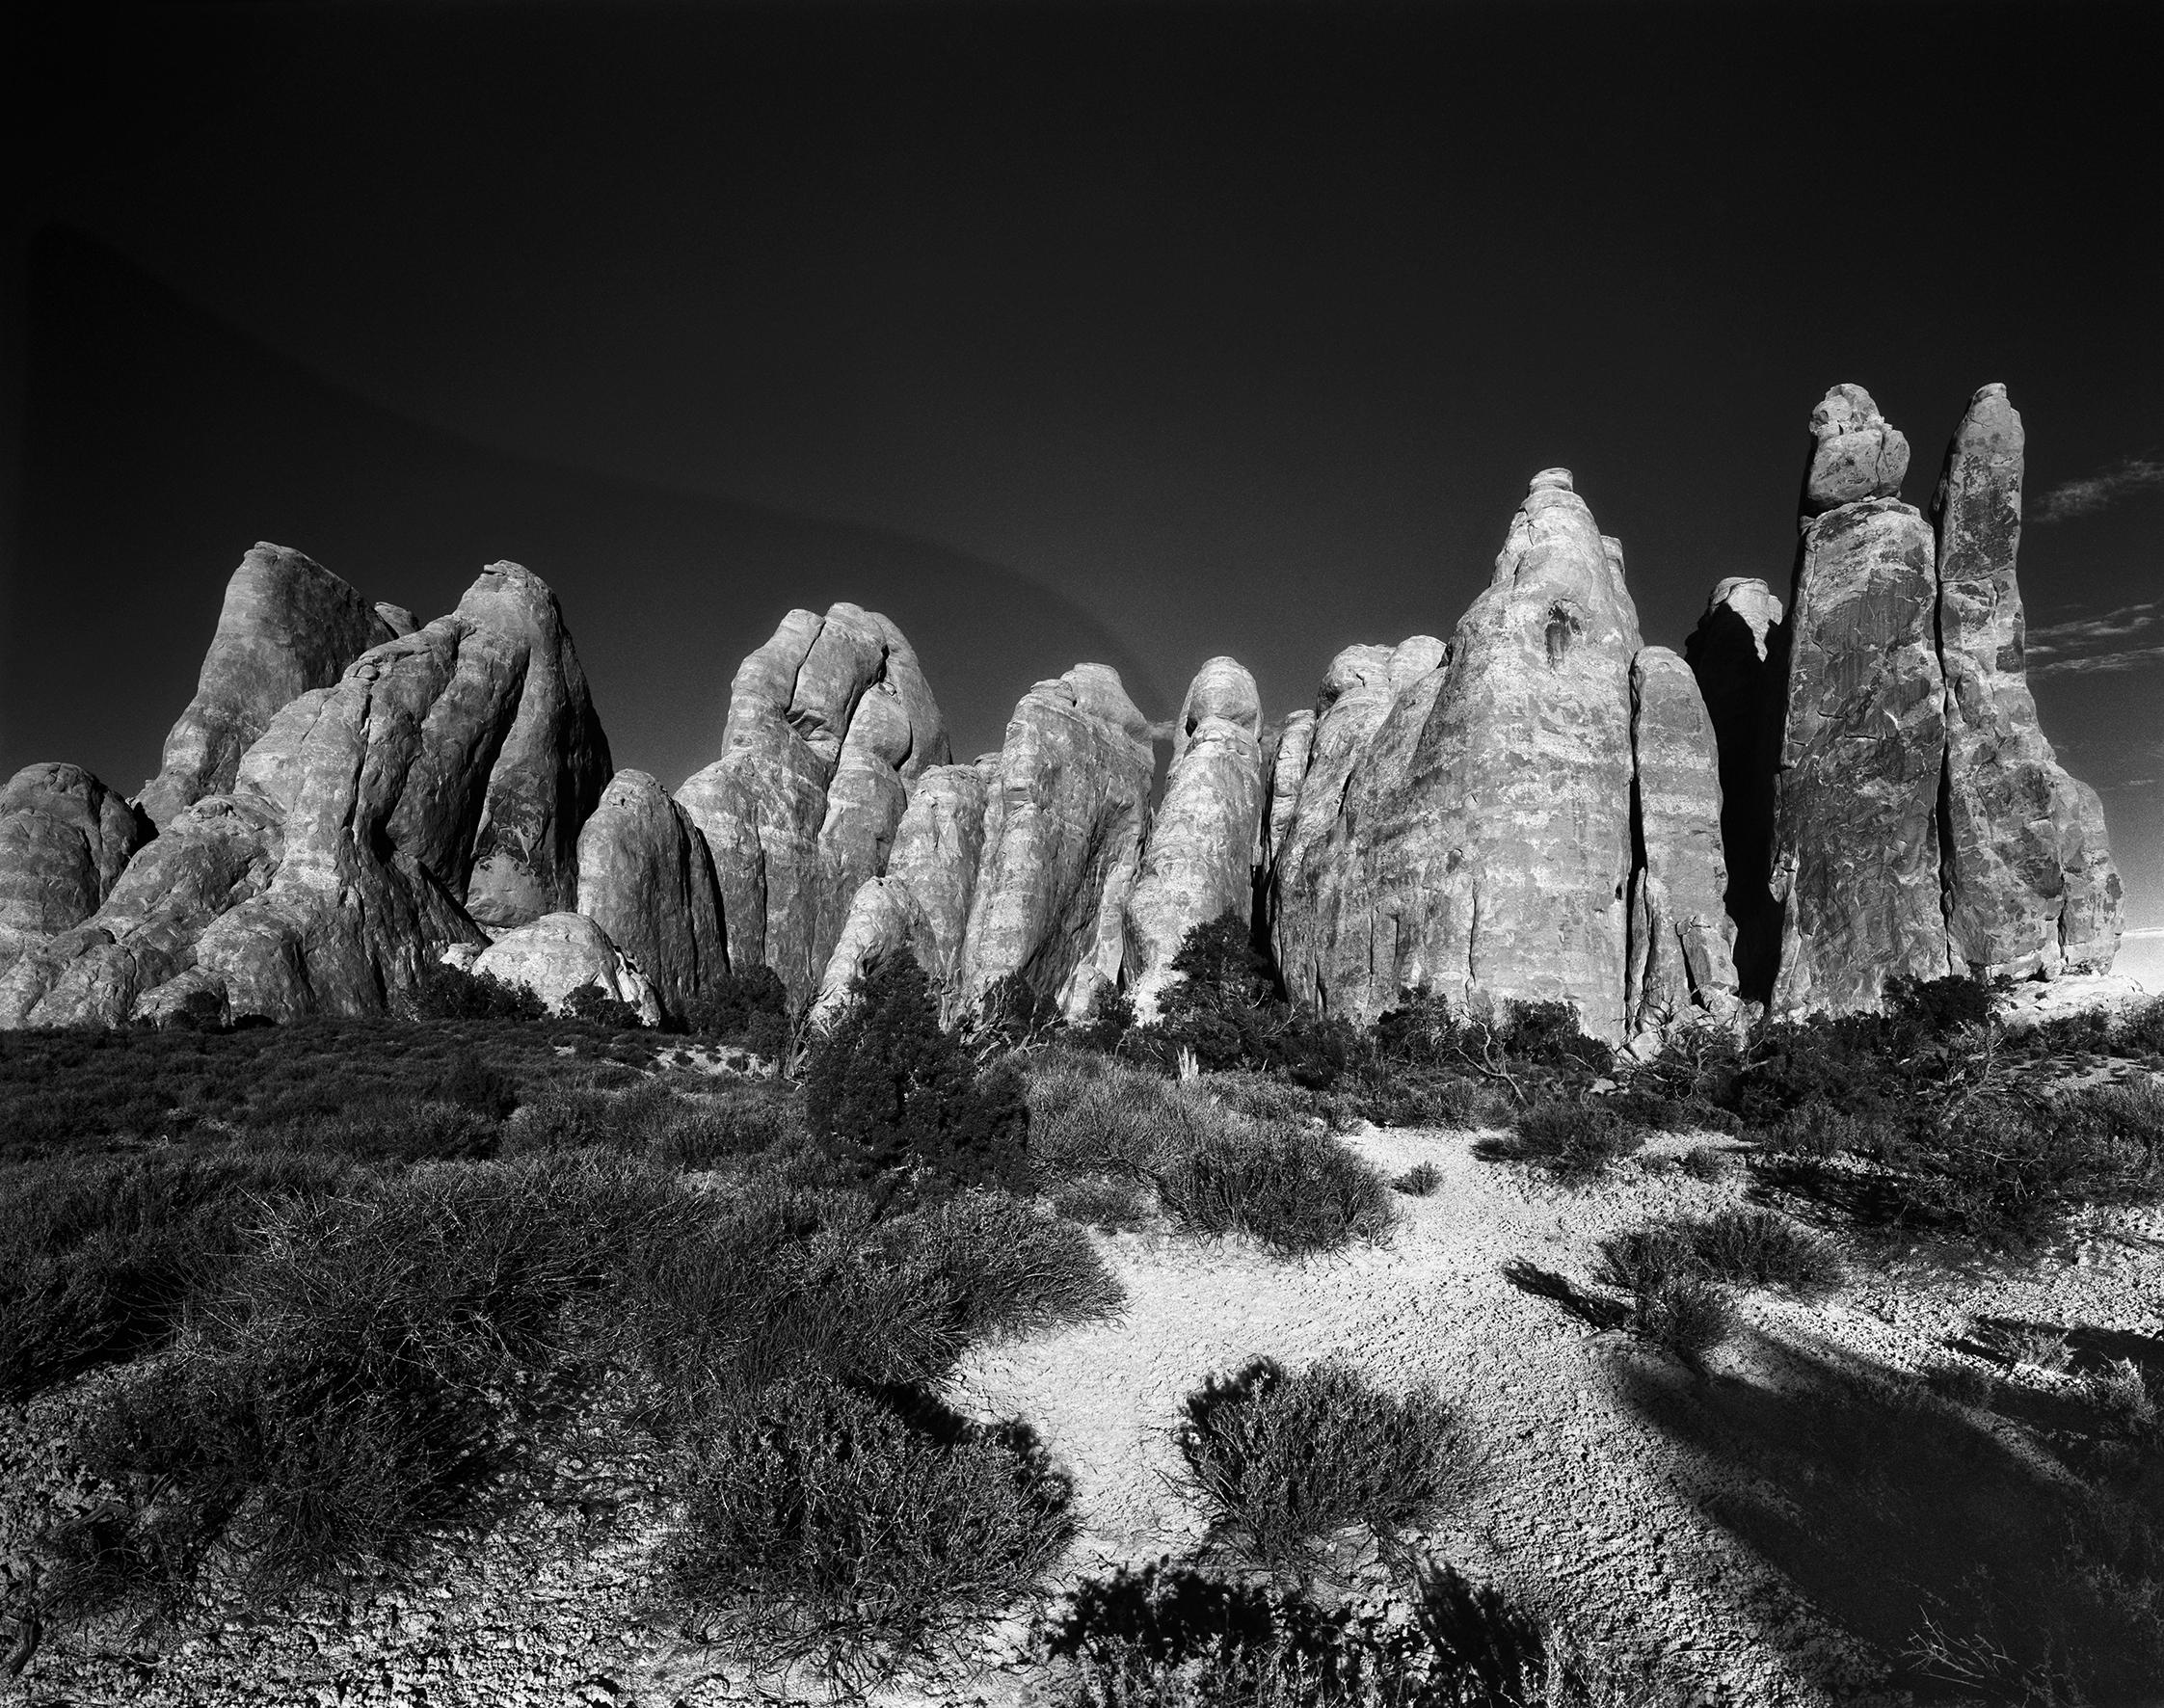 Ugne Pouwell Black and White Photograph – Sand Dune Arches – Schwarz-Weiß-Bergbögenfotografie, limitierte Auflage von 15 Stück